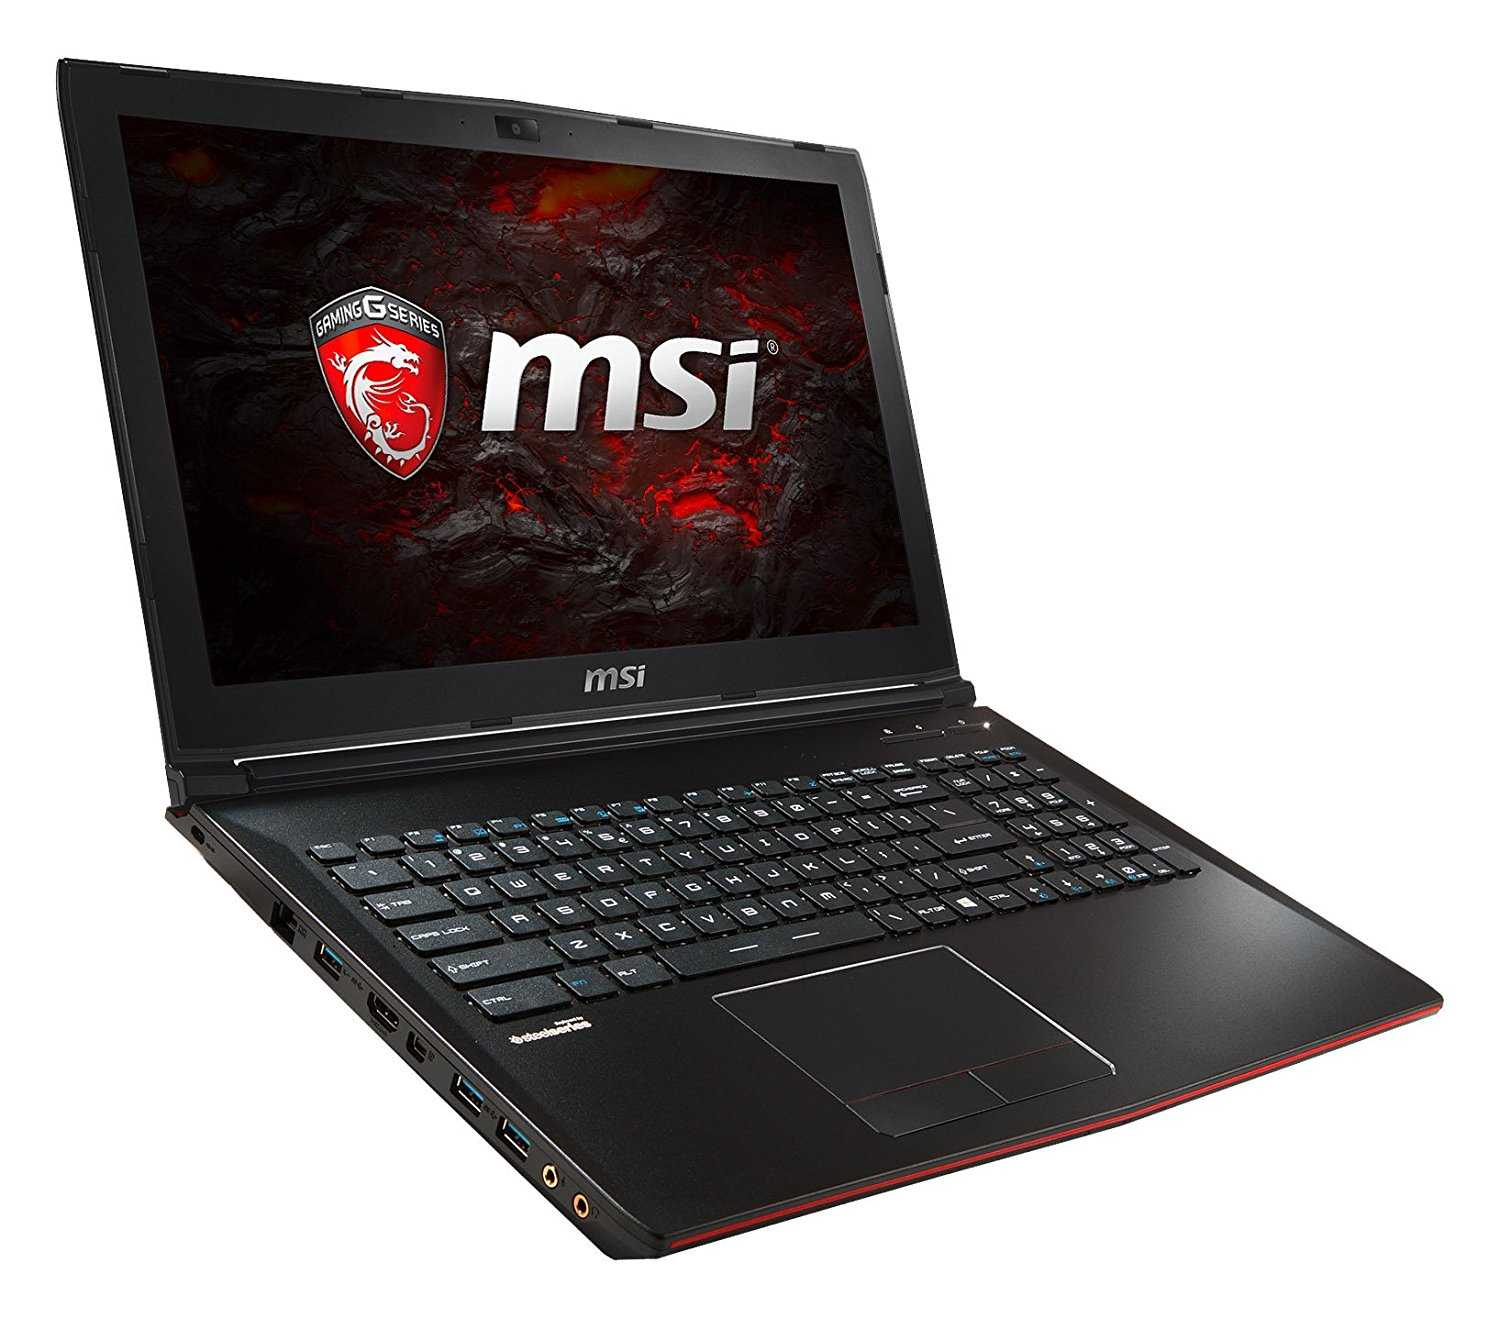 Ноутбук msi gaming (gp-серия) gp60 2od — купить, цена и характеристики, отзывы